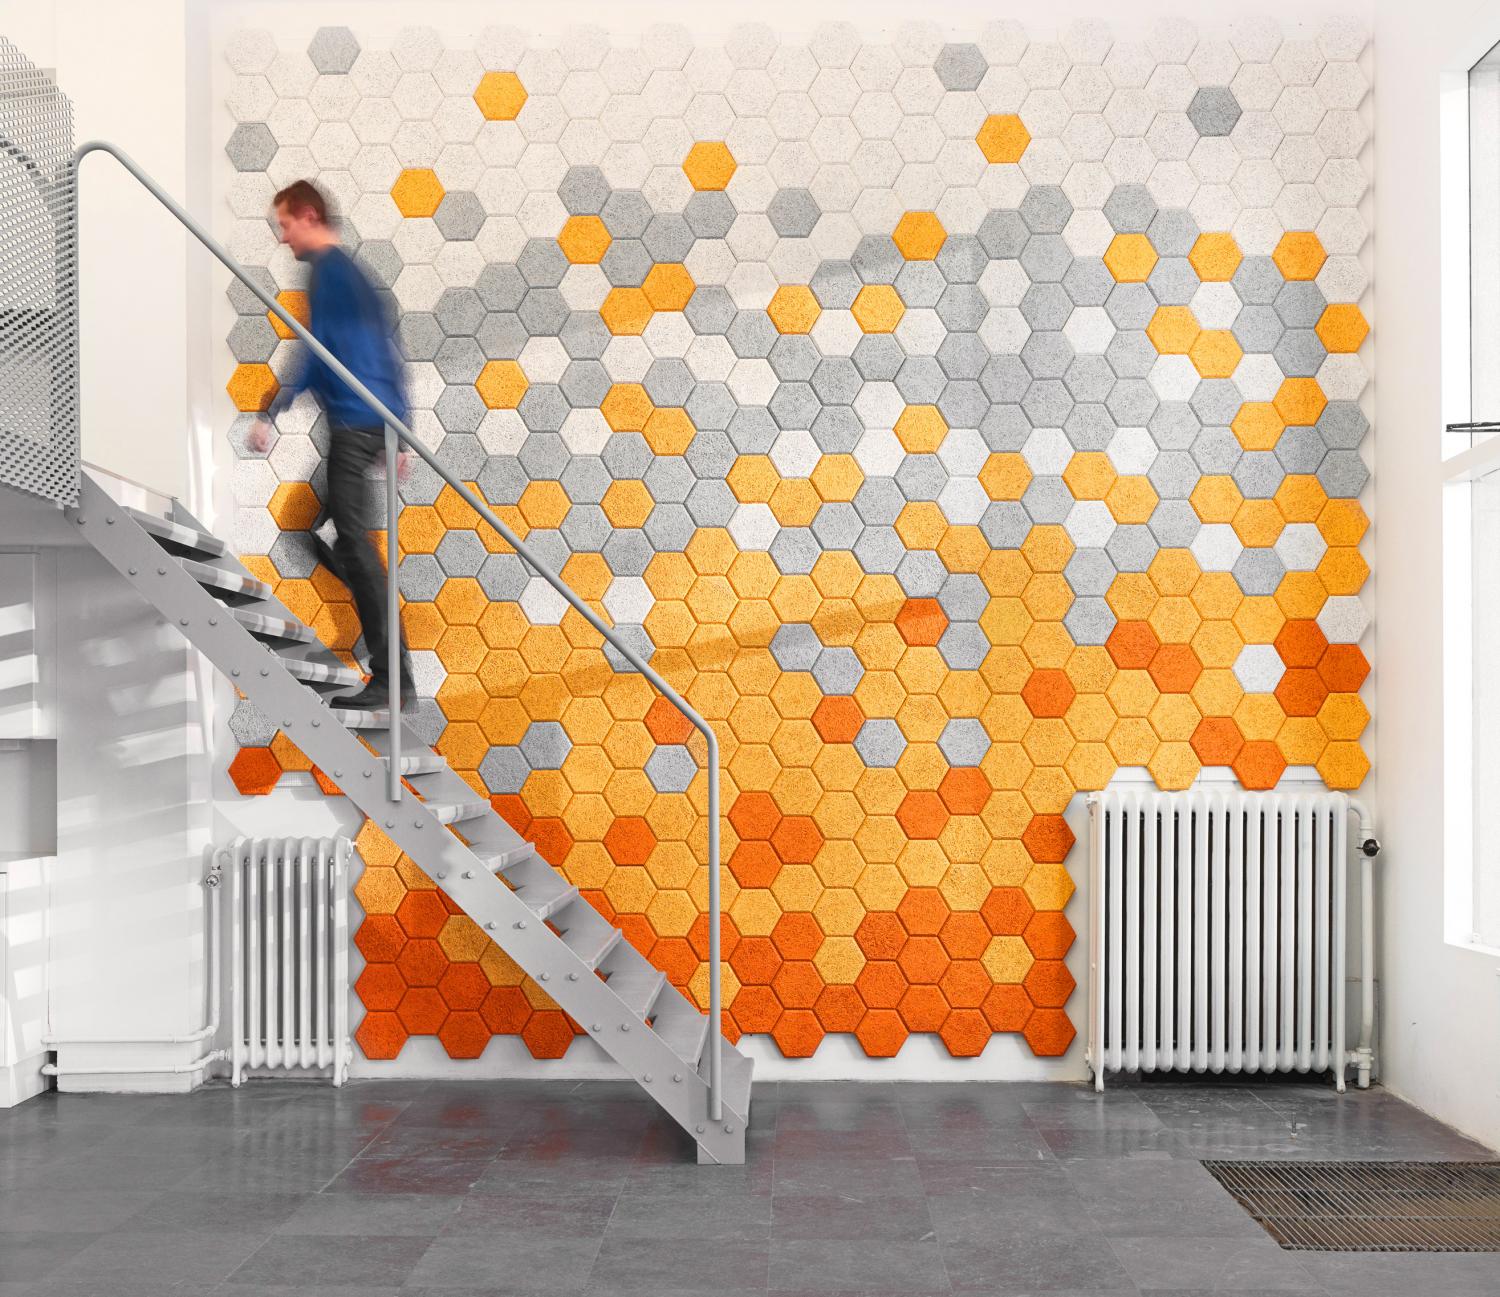 Hexagon Wall Tiles - Sound absorbing wood wool hexagon wall mural tiles